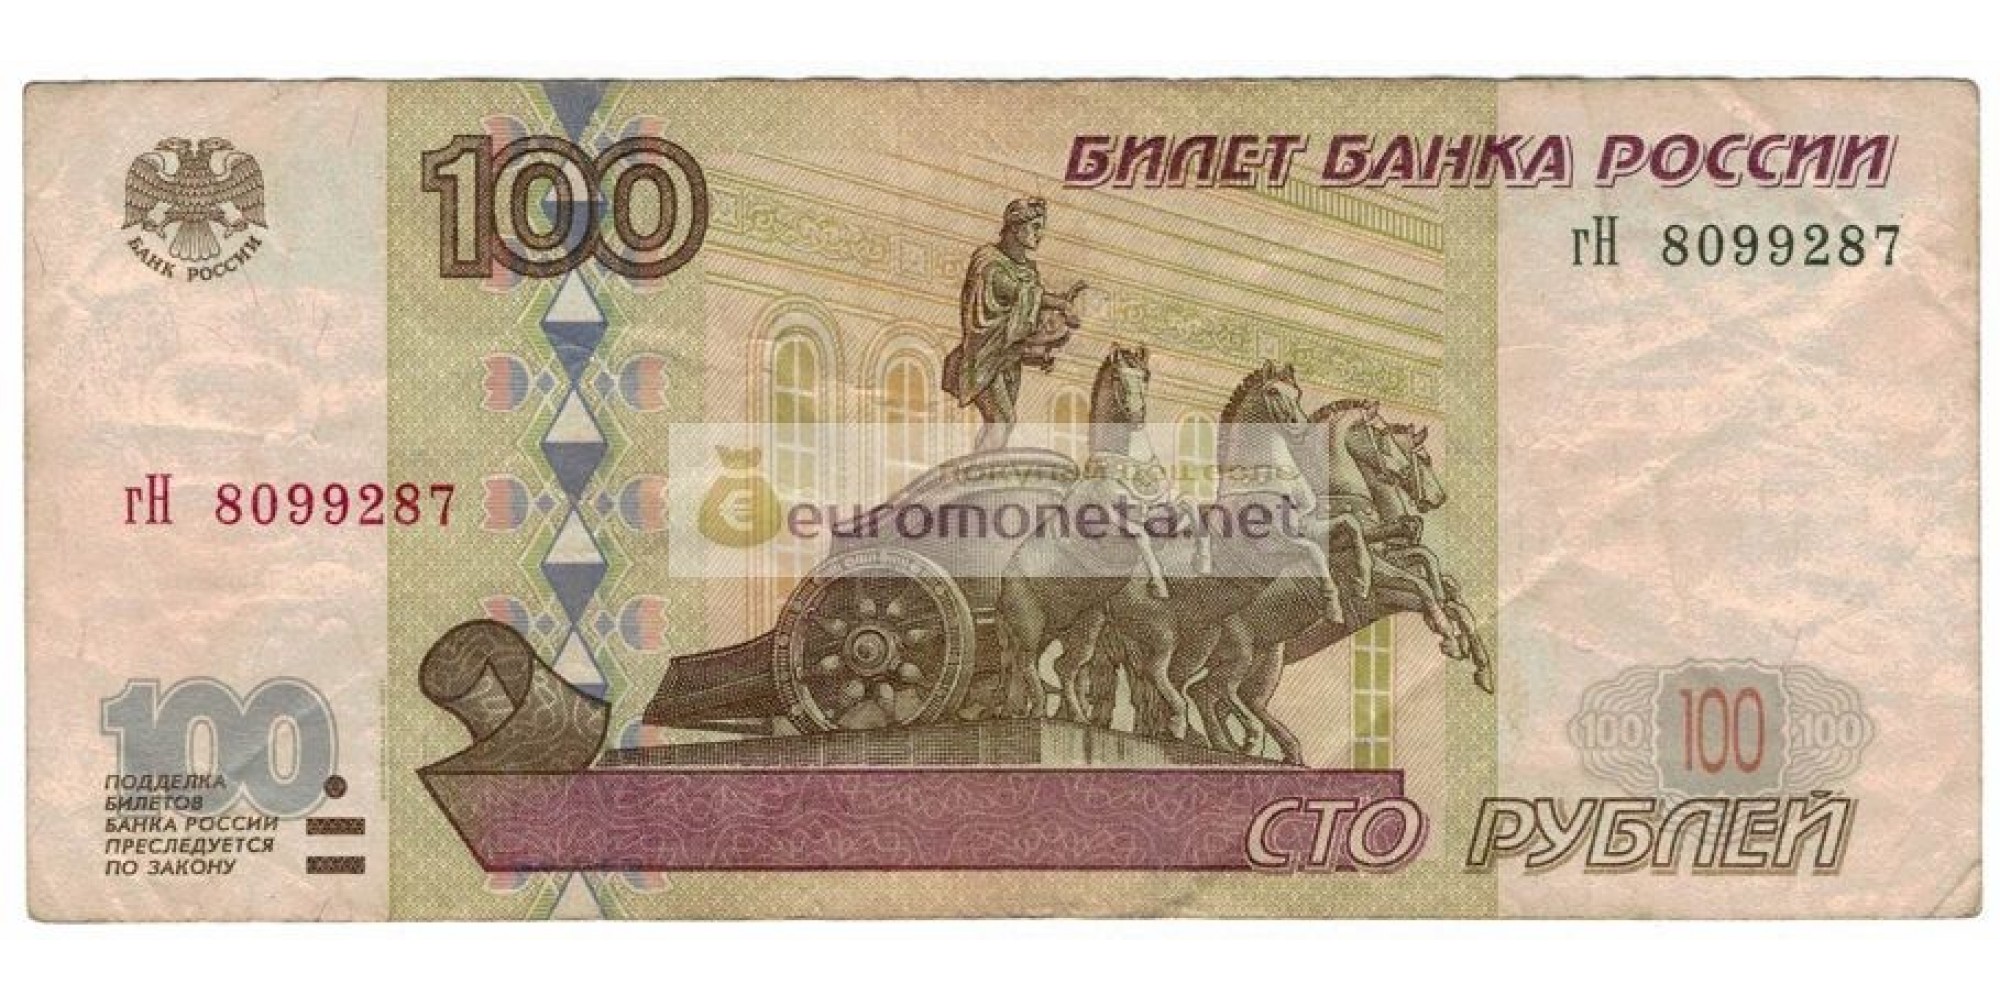 Россия 100 рублей 1997 год модификация 2001 год серия гН 8099287